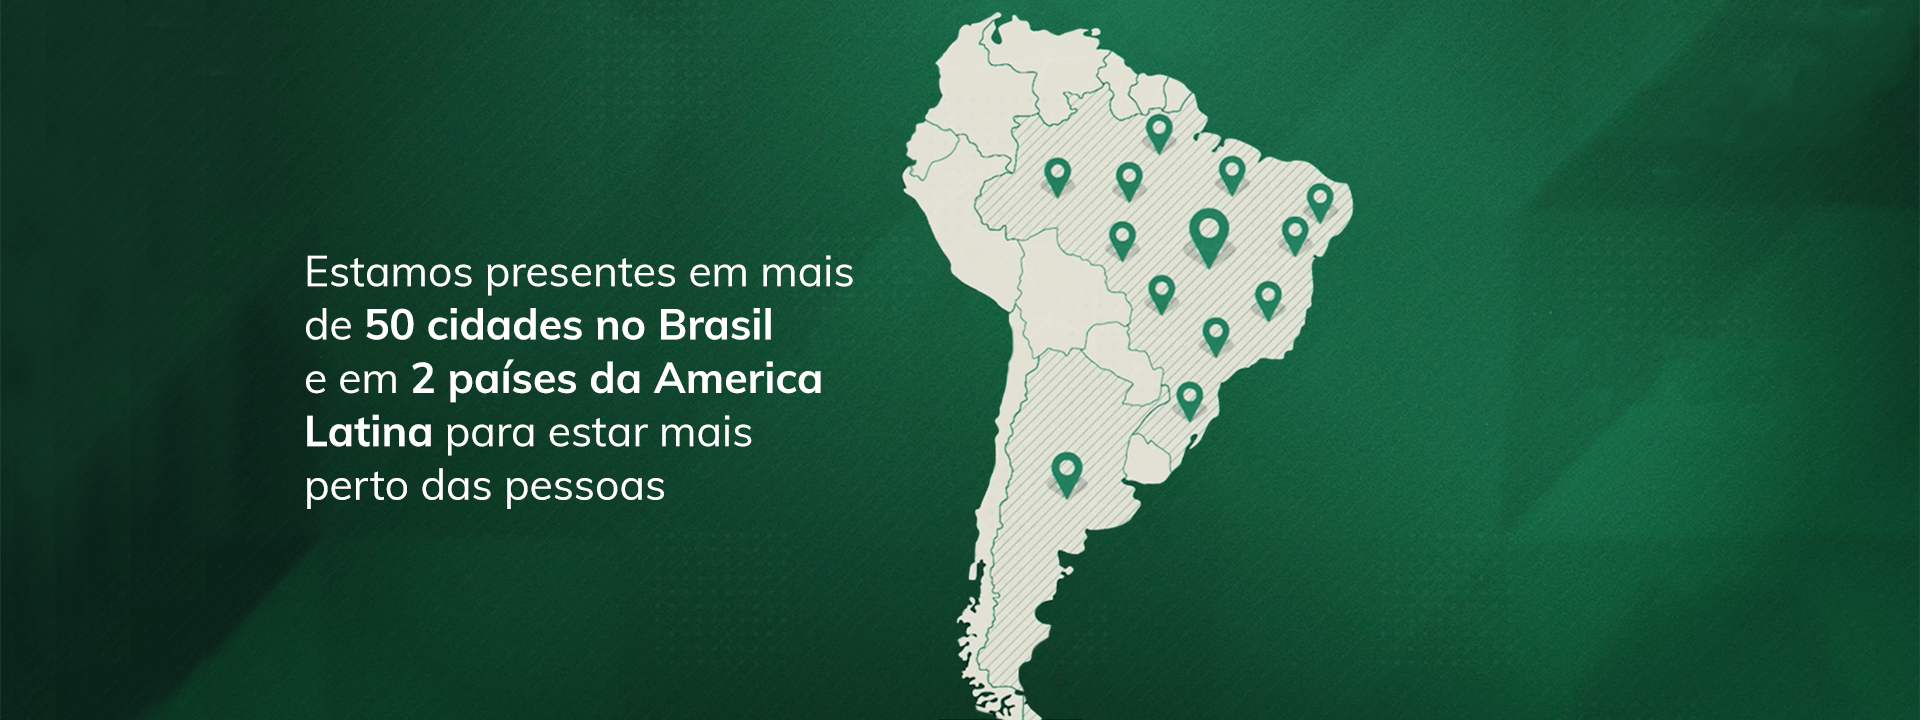 Estamos presentes em mais de 50 cidades no Brasil e em 2 países da América Latina para estar mais perto das pessoas.